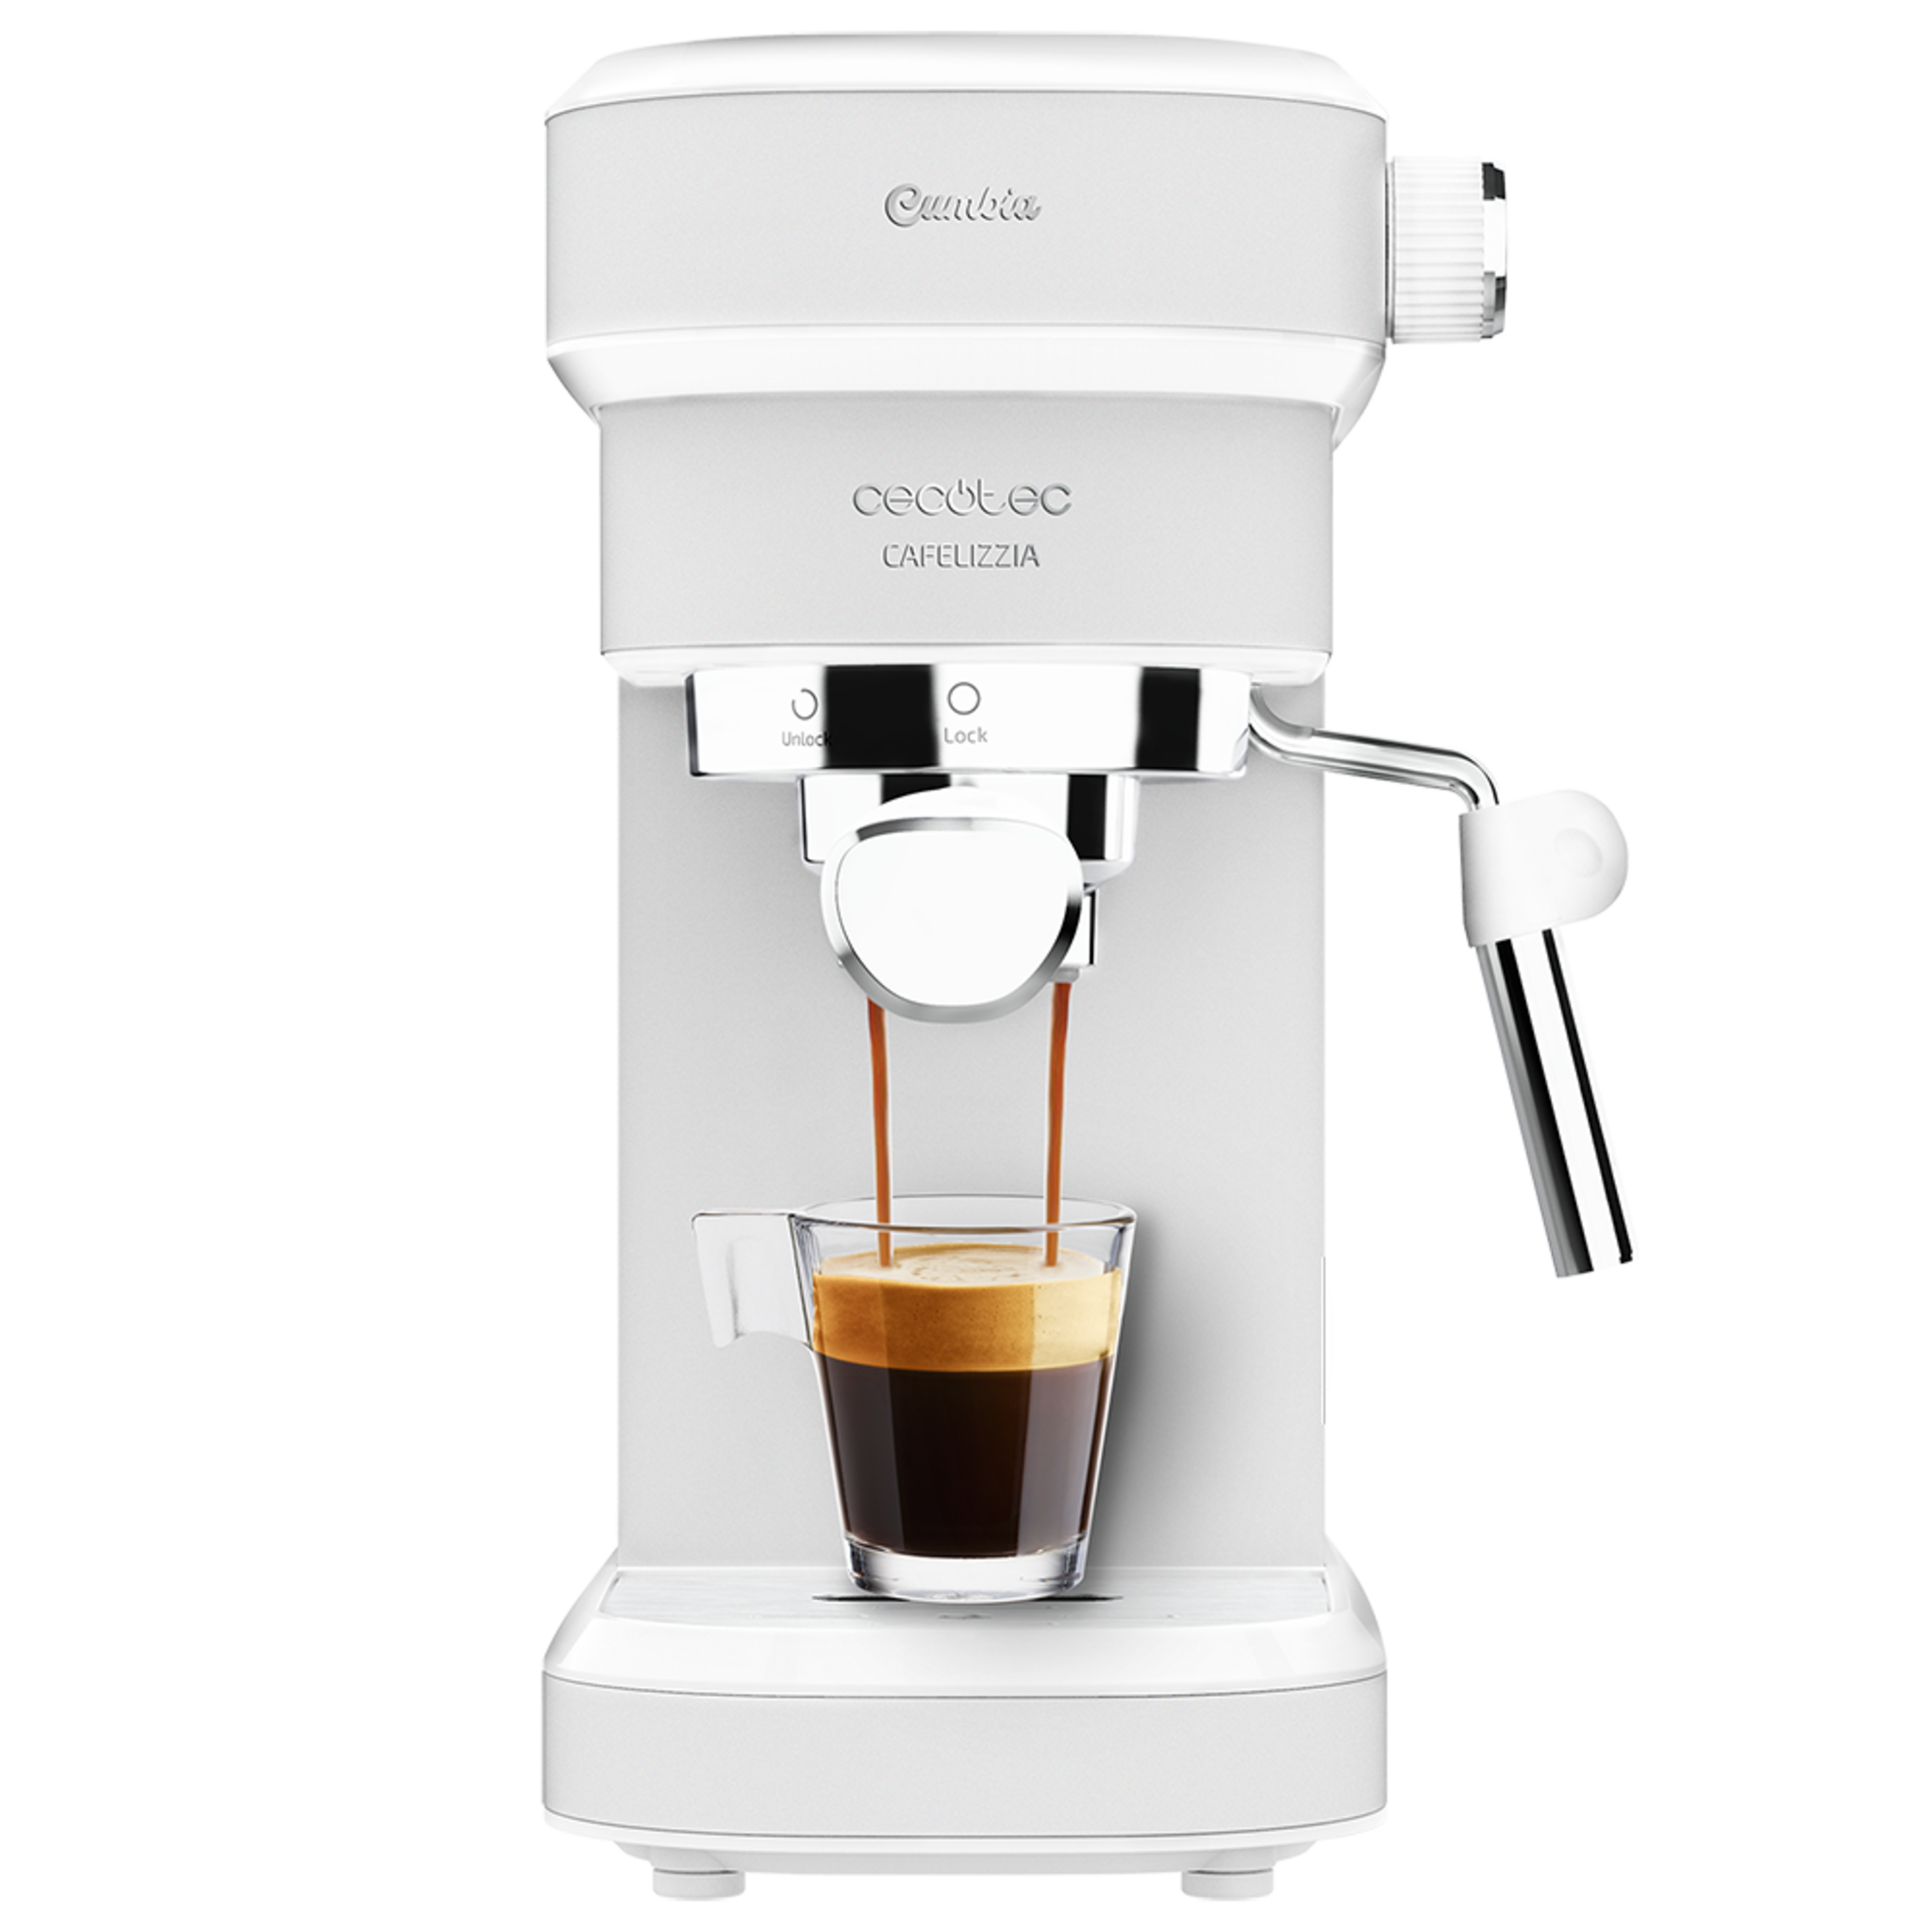 Cecotec Machine à café  Cafelizzia 790 White. Elle possède un système rapide de préchauffage, 20 bars, Mode Auto pour 1 ou 2 café(s), buse vapeur orientable et réservoir de 1,2 L. Titre